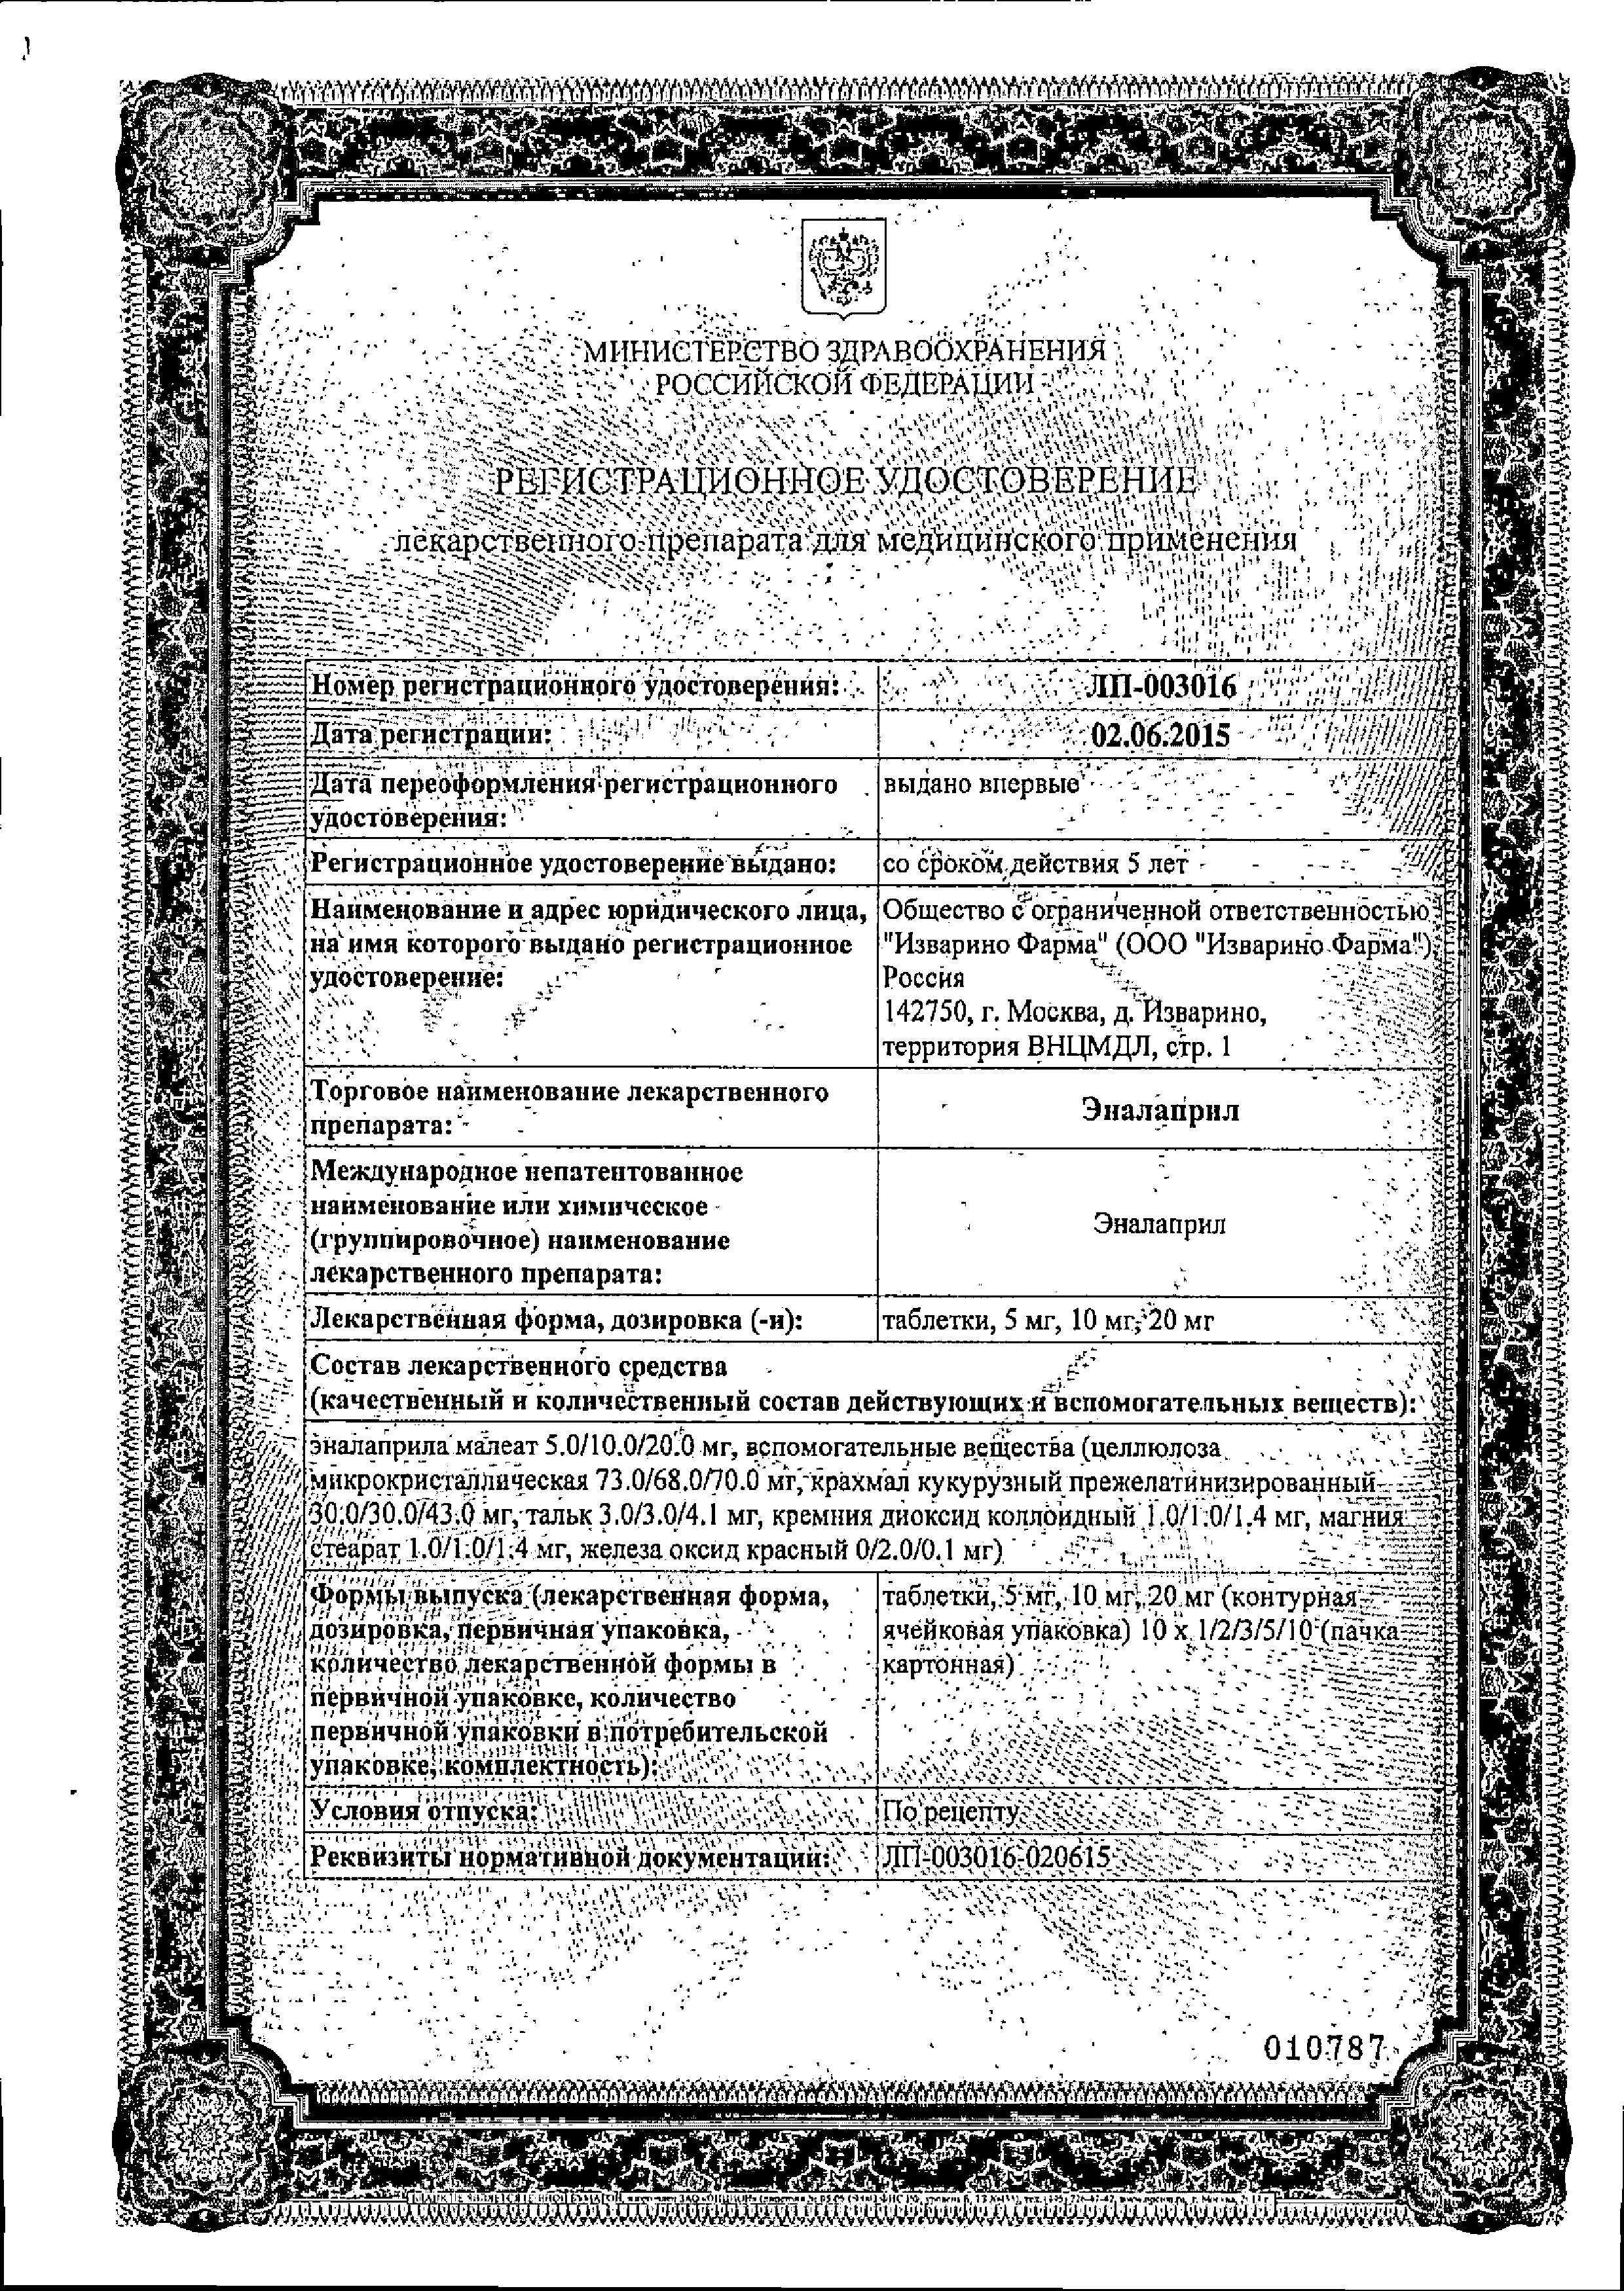 Эналаприл сертификат